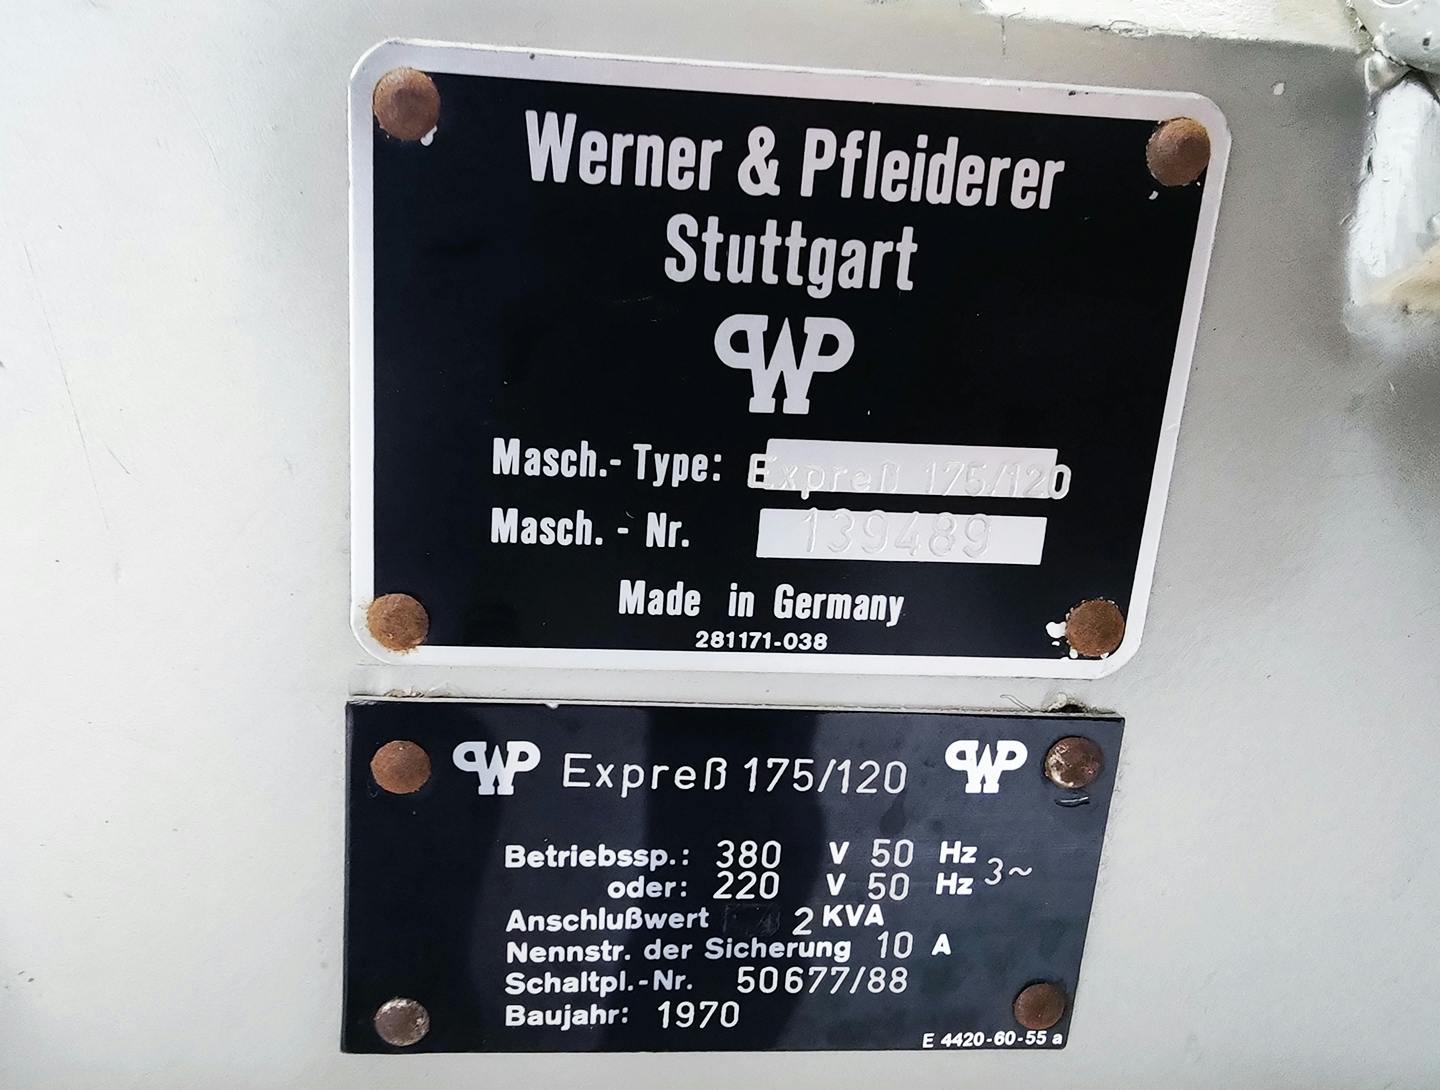 Werner & Pfleiderer Express 175/120 - Sítový granulátor - image 9